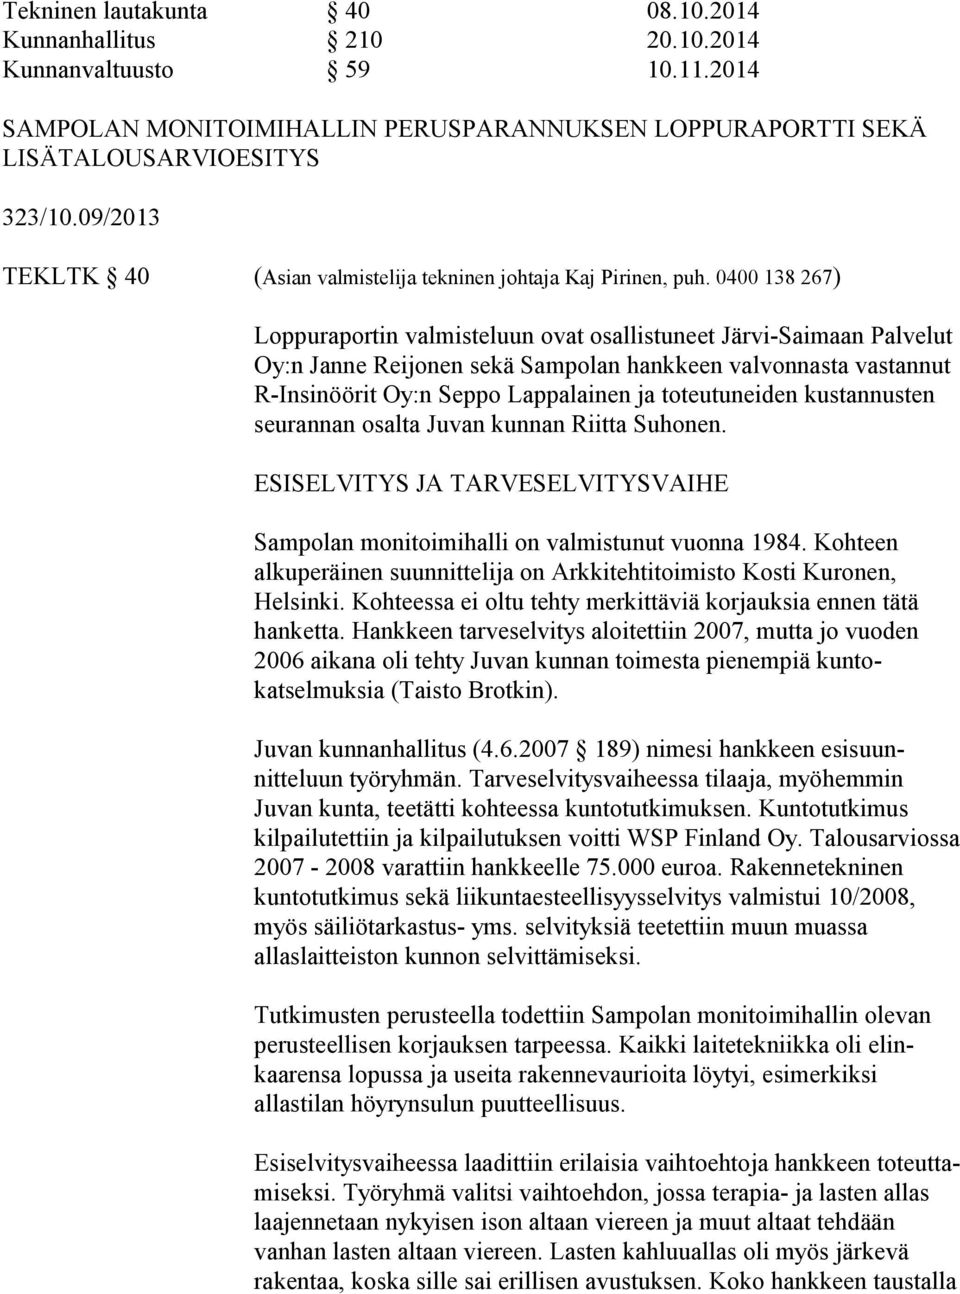 0400 138 267) Loppuraportin valmisteluun ovat osallistuneet JärviSaimaan Palvelut Oy:n Janne Reijonen sekä Sampolan hankkeen valvonnasta vastannut RInsinöörit Oy:n Seppo Lappalainen ja toteutuneiden